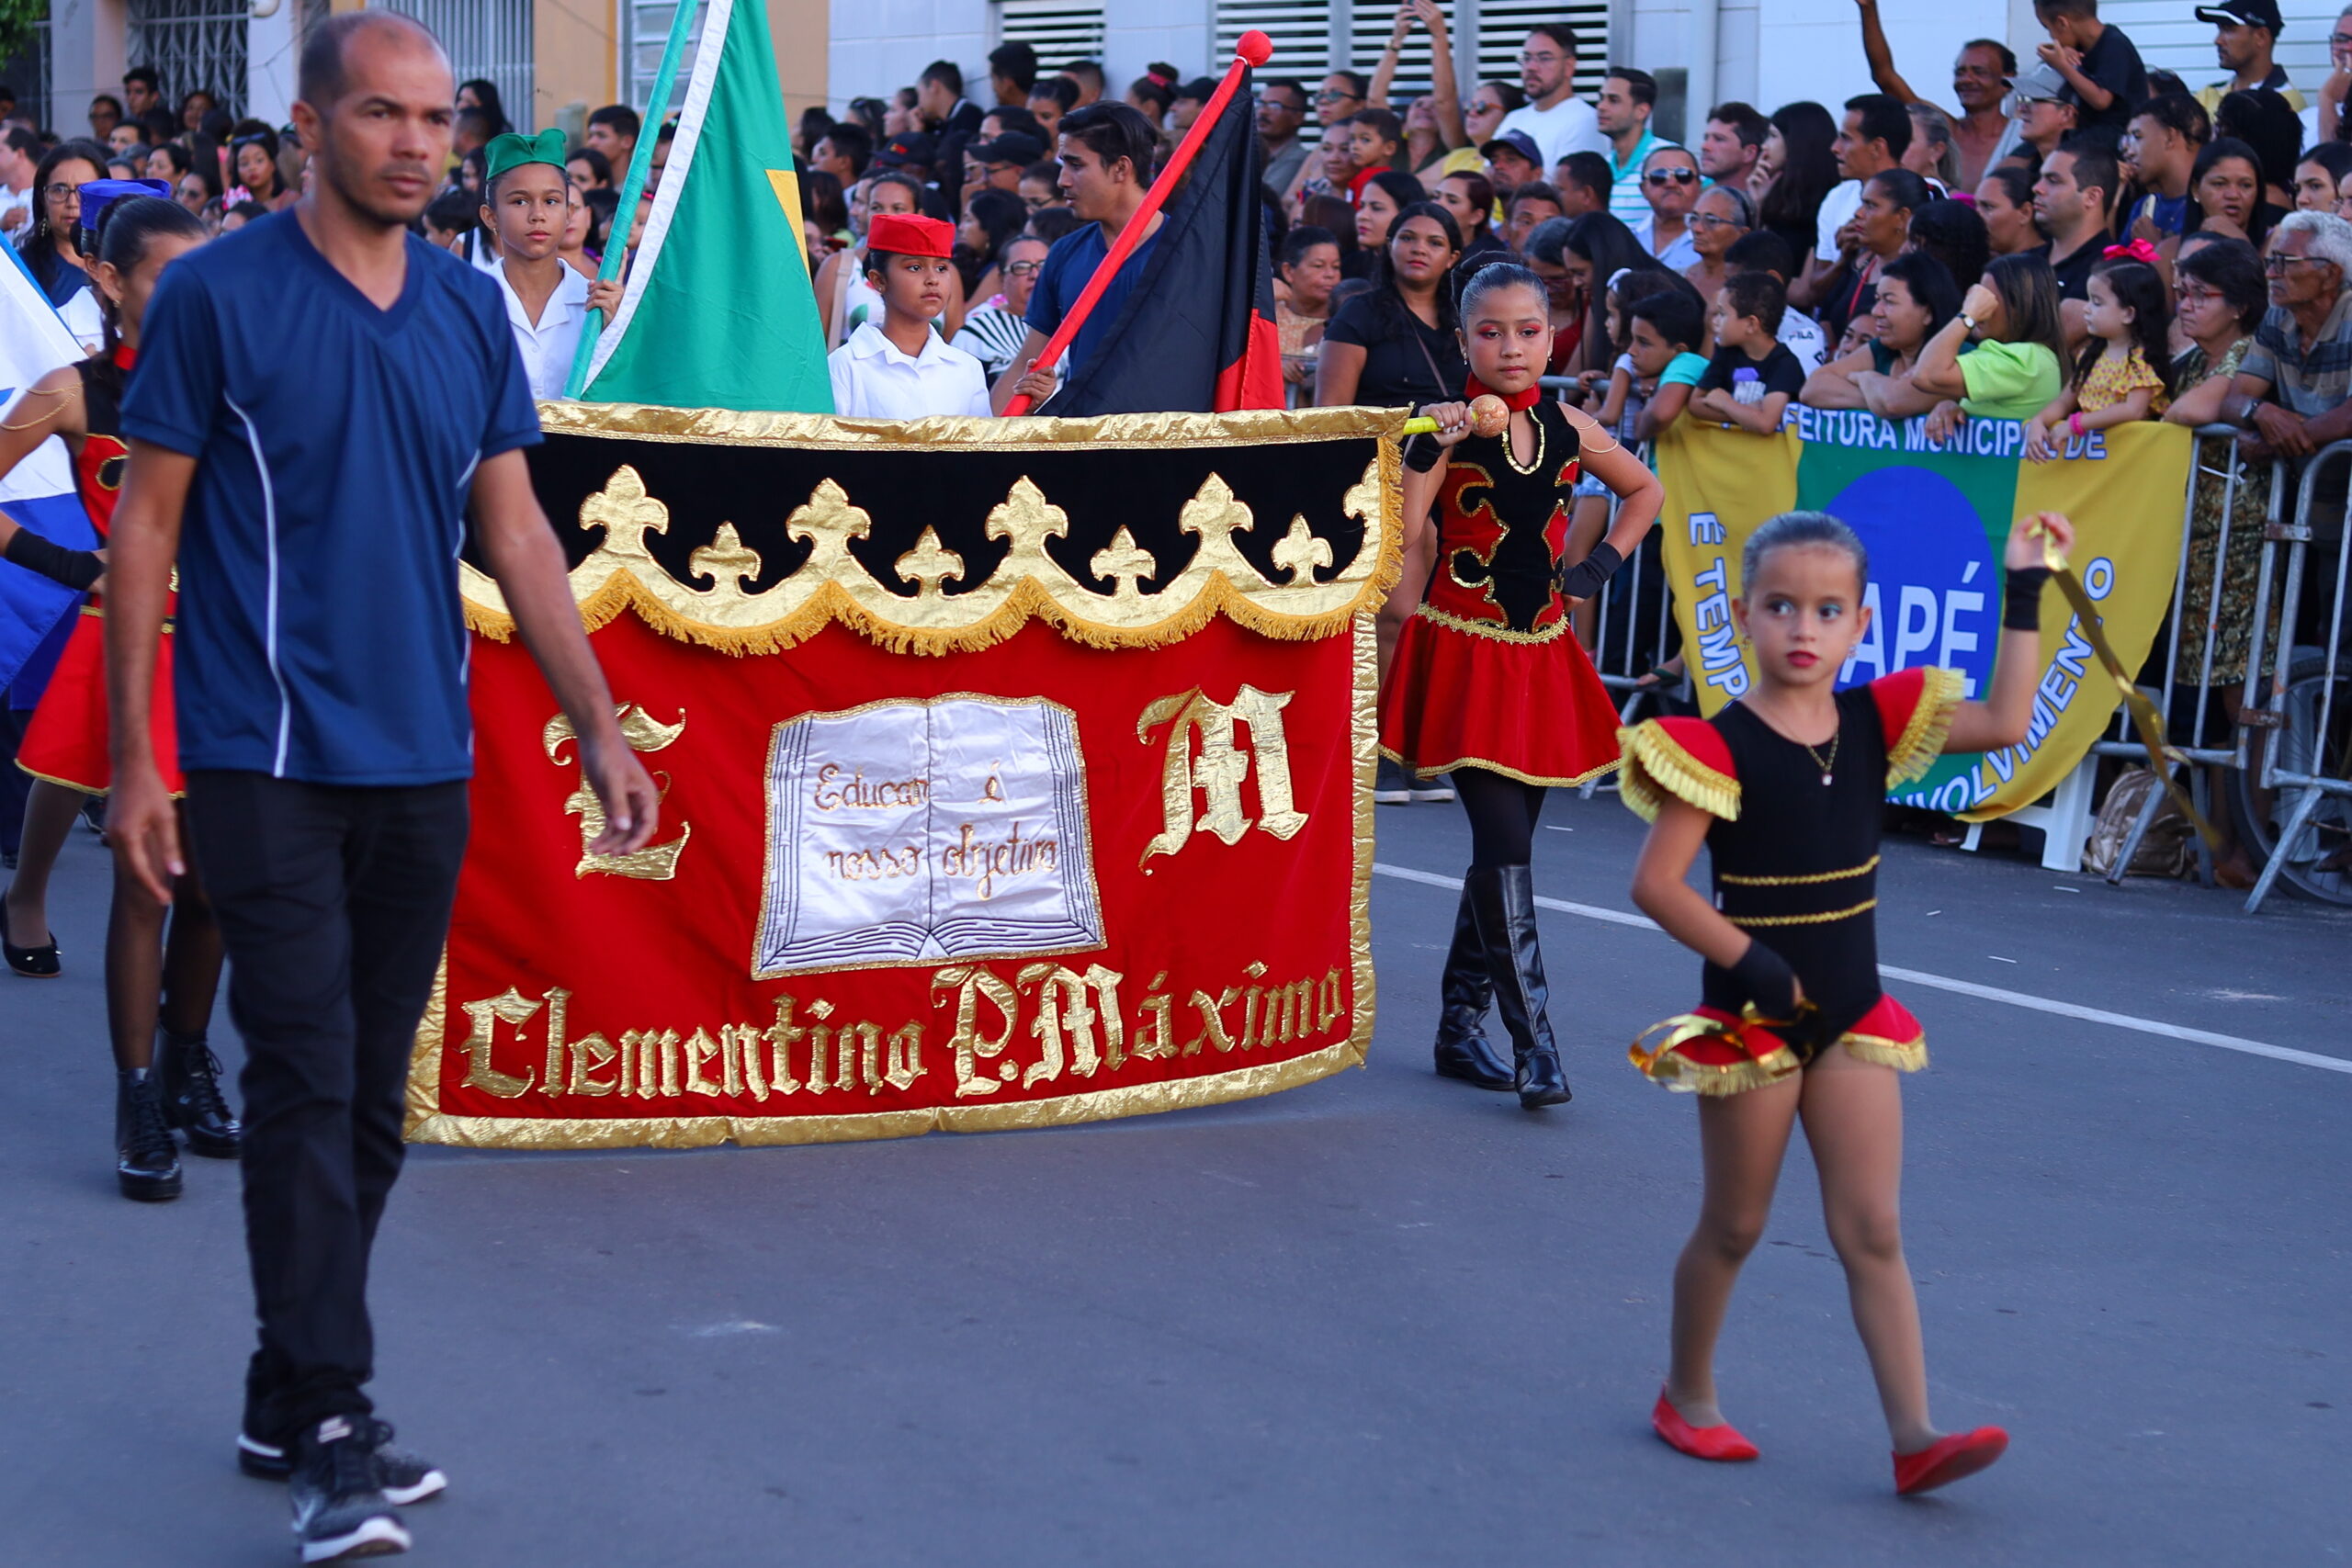 Desfile Cívico sobre os 97 anos de emancipação política de Sapé atrai multidão